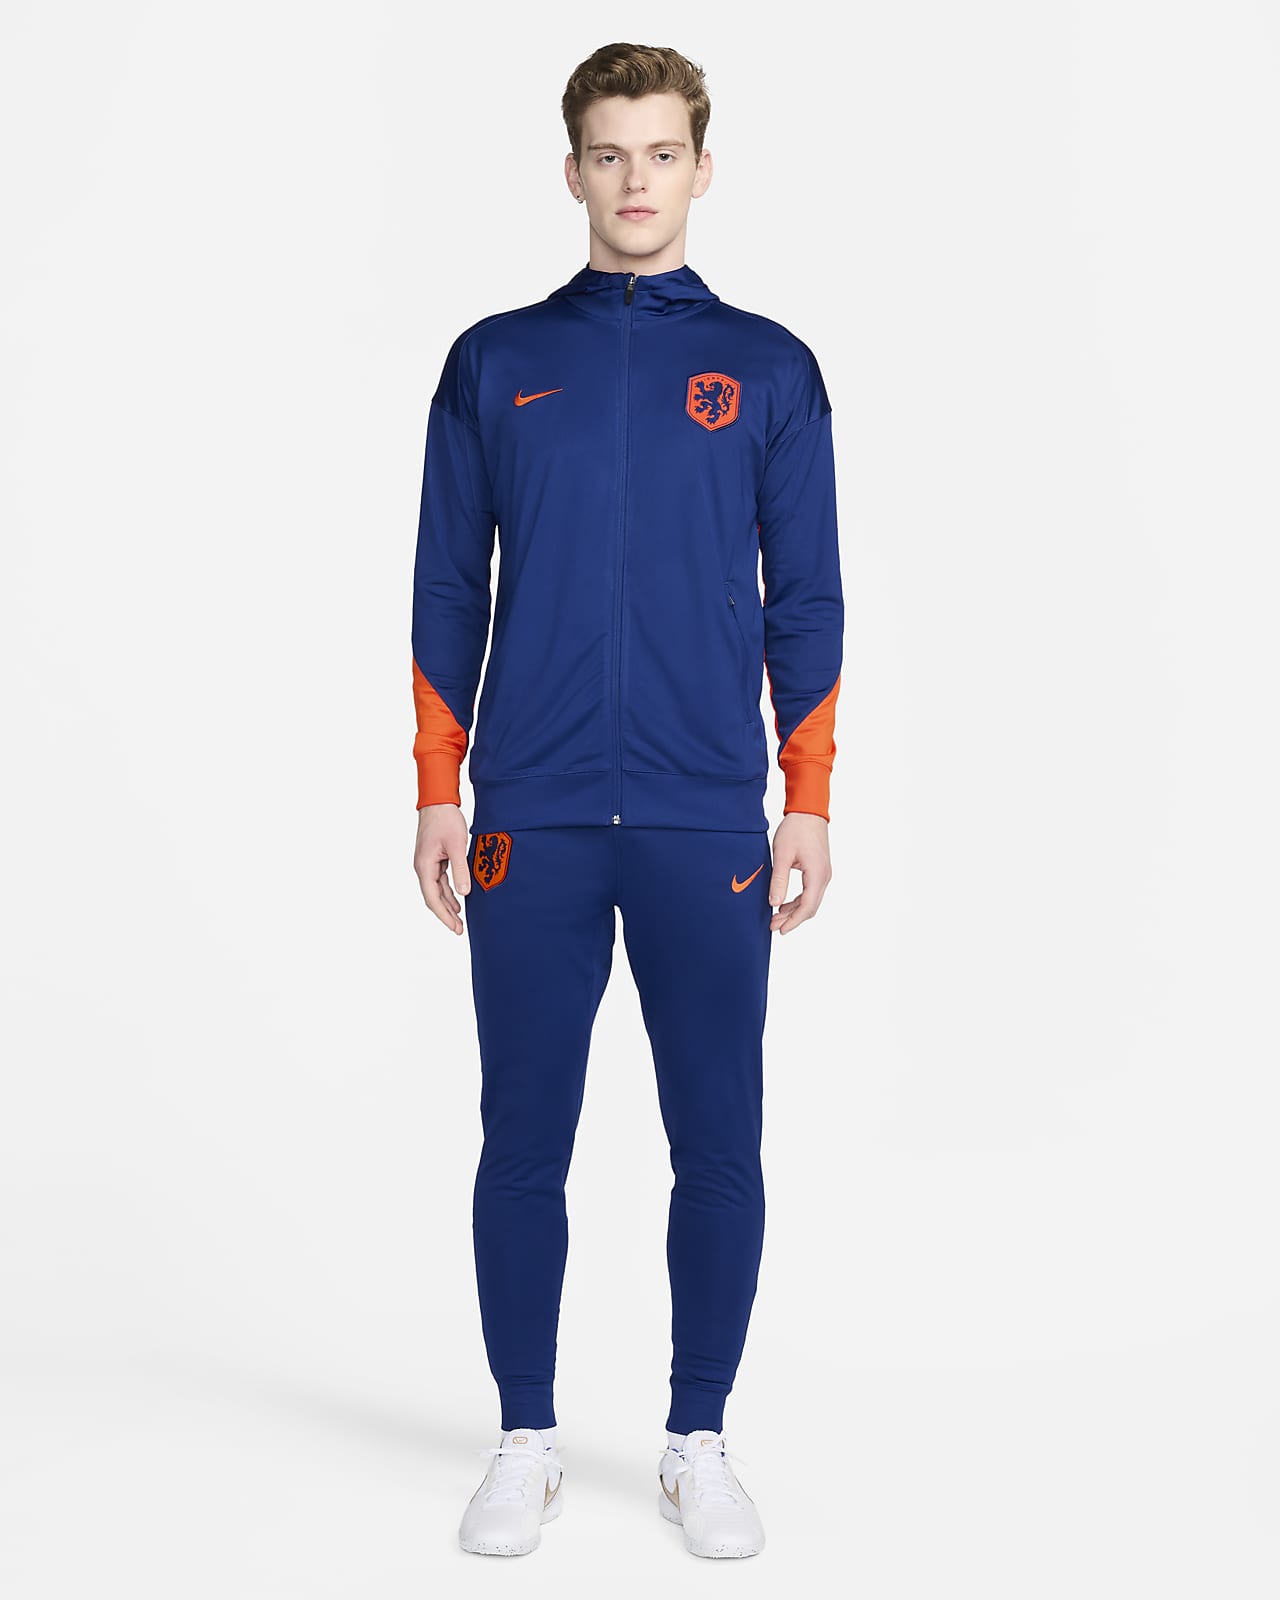 Nederland Strike Nike Dri-FIT knit voetbaltrainingspak met capuchon voor heren